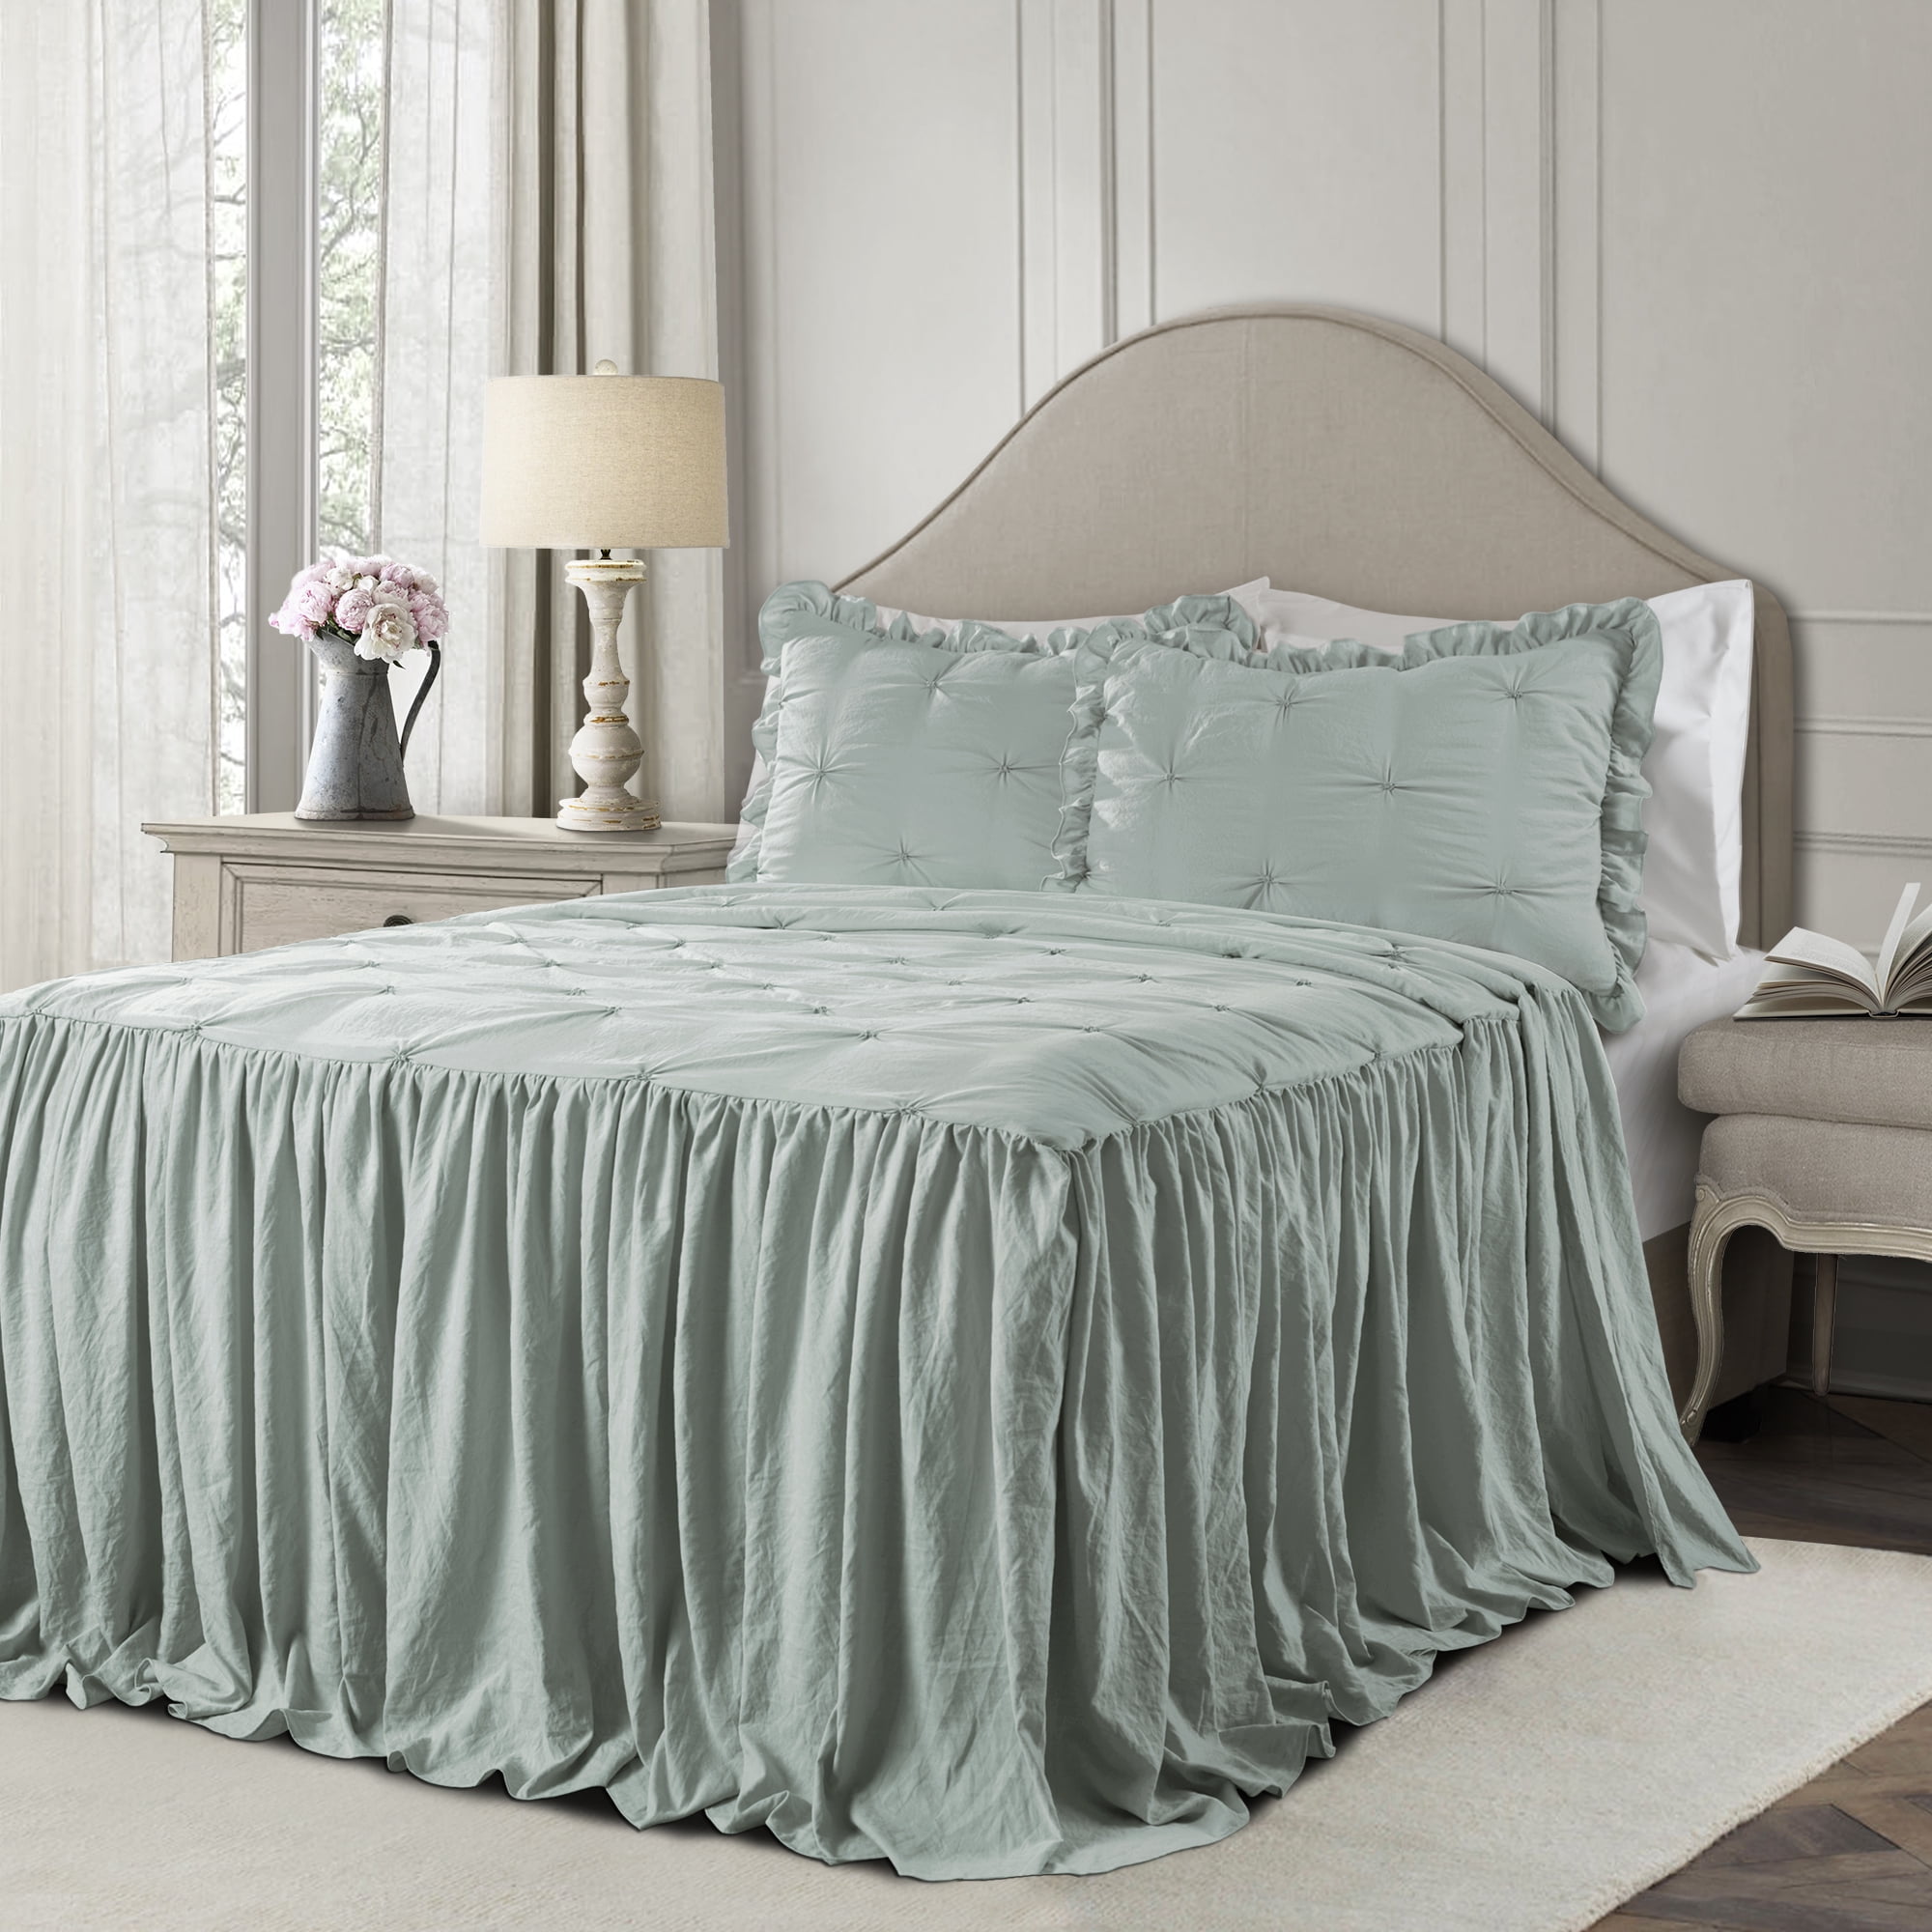 Bedspread Coverlet Petri Ruffle Lace Cotton 100%Cotton Quilt Set 